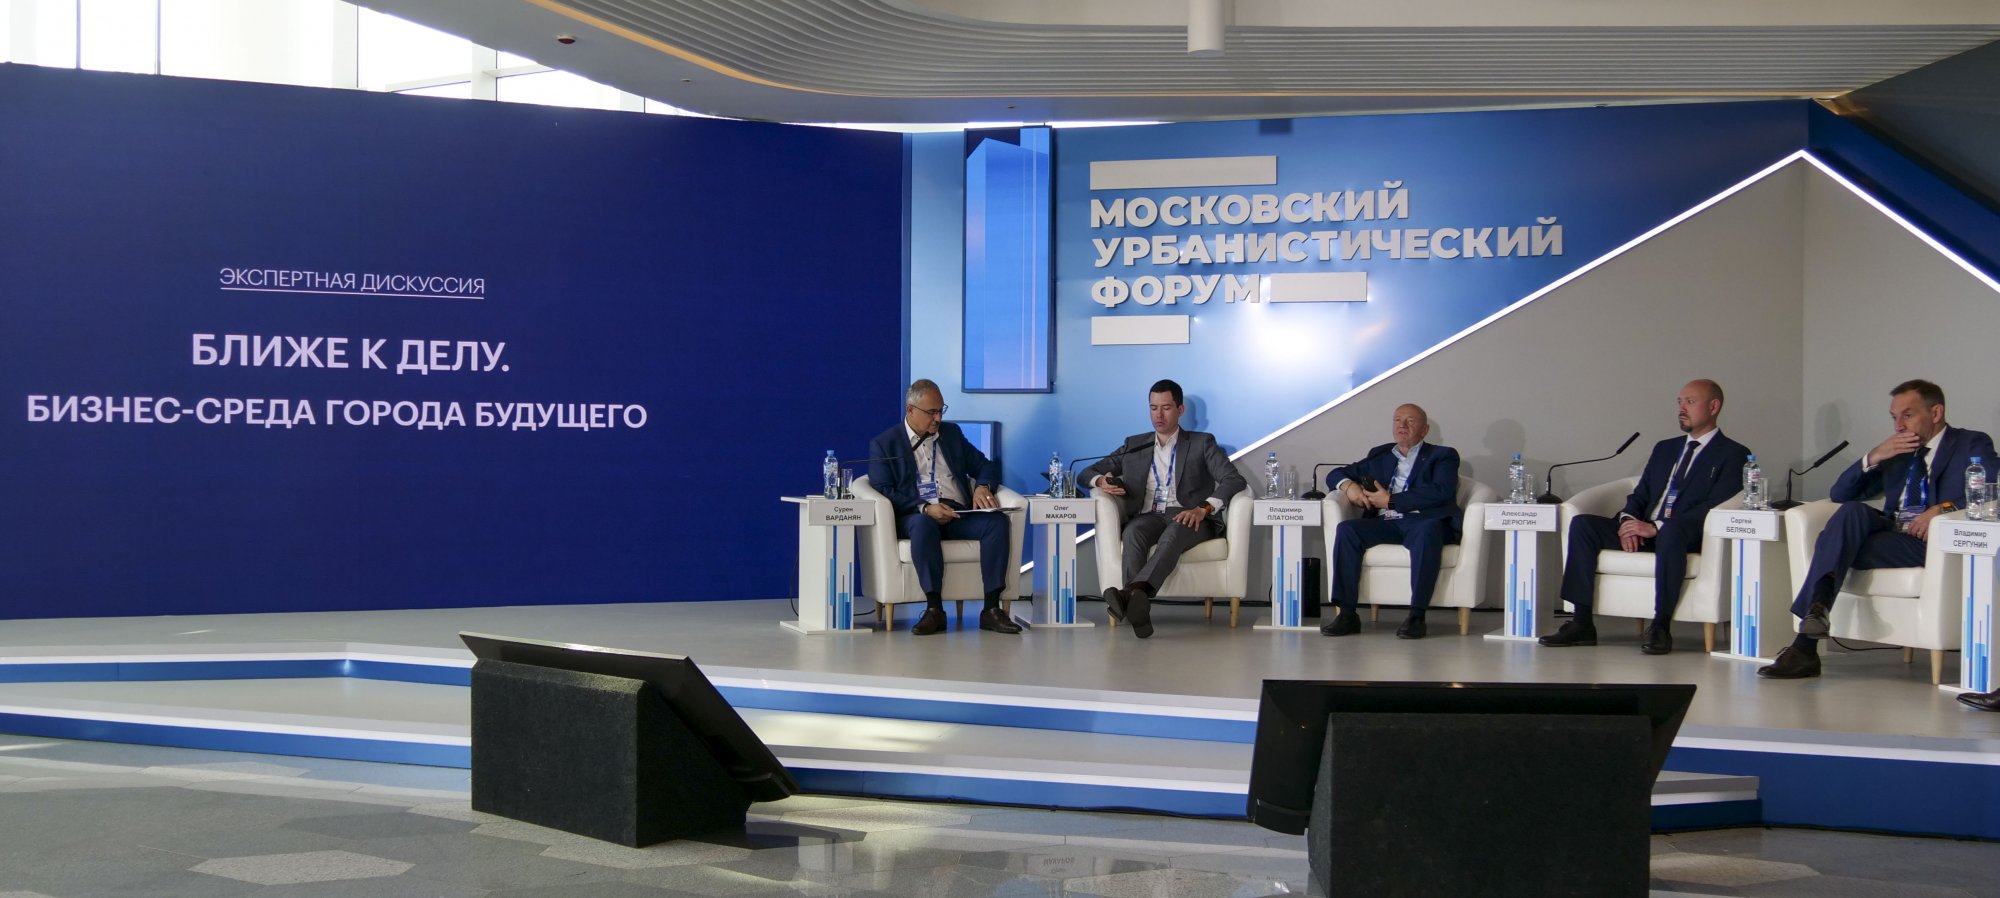 В рамках Московского Урбанфорума МТПП организовала дискуссию на тему бизнес-среды будущего